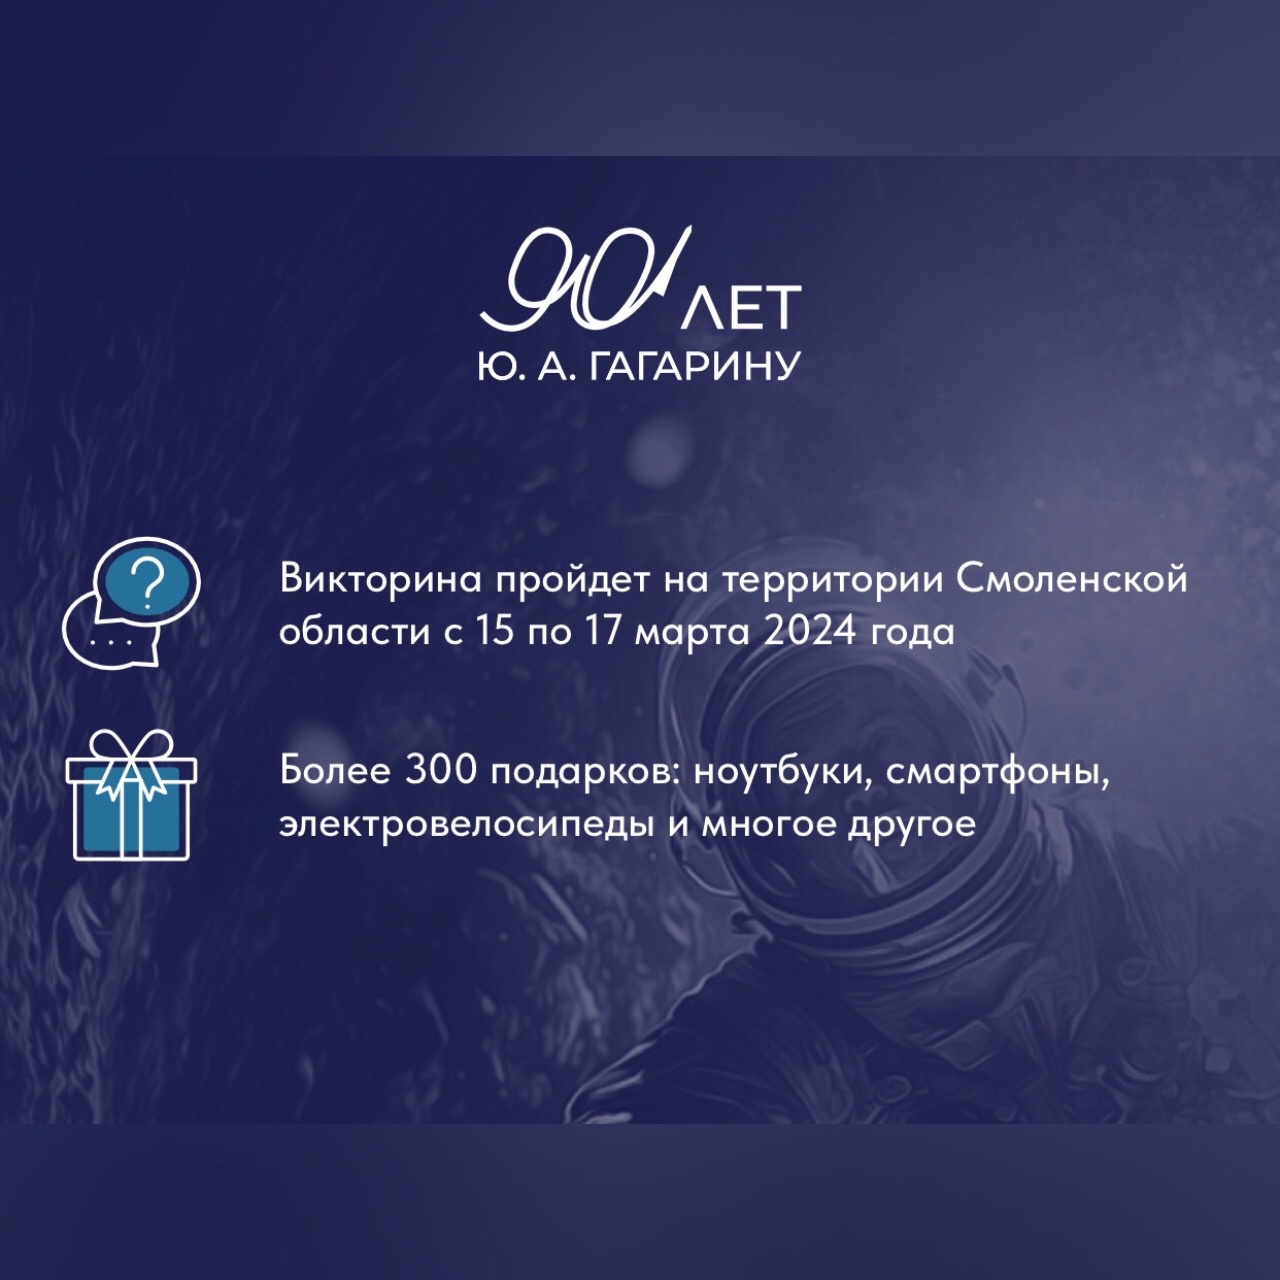 Более 37 000 смолян приняли участие в викторине к 90-летию Юрия Гагарина